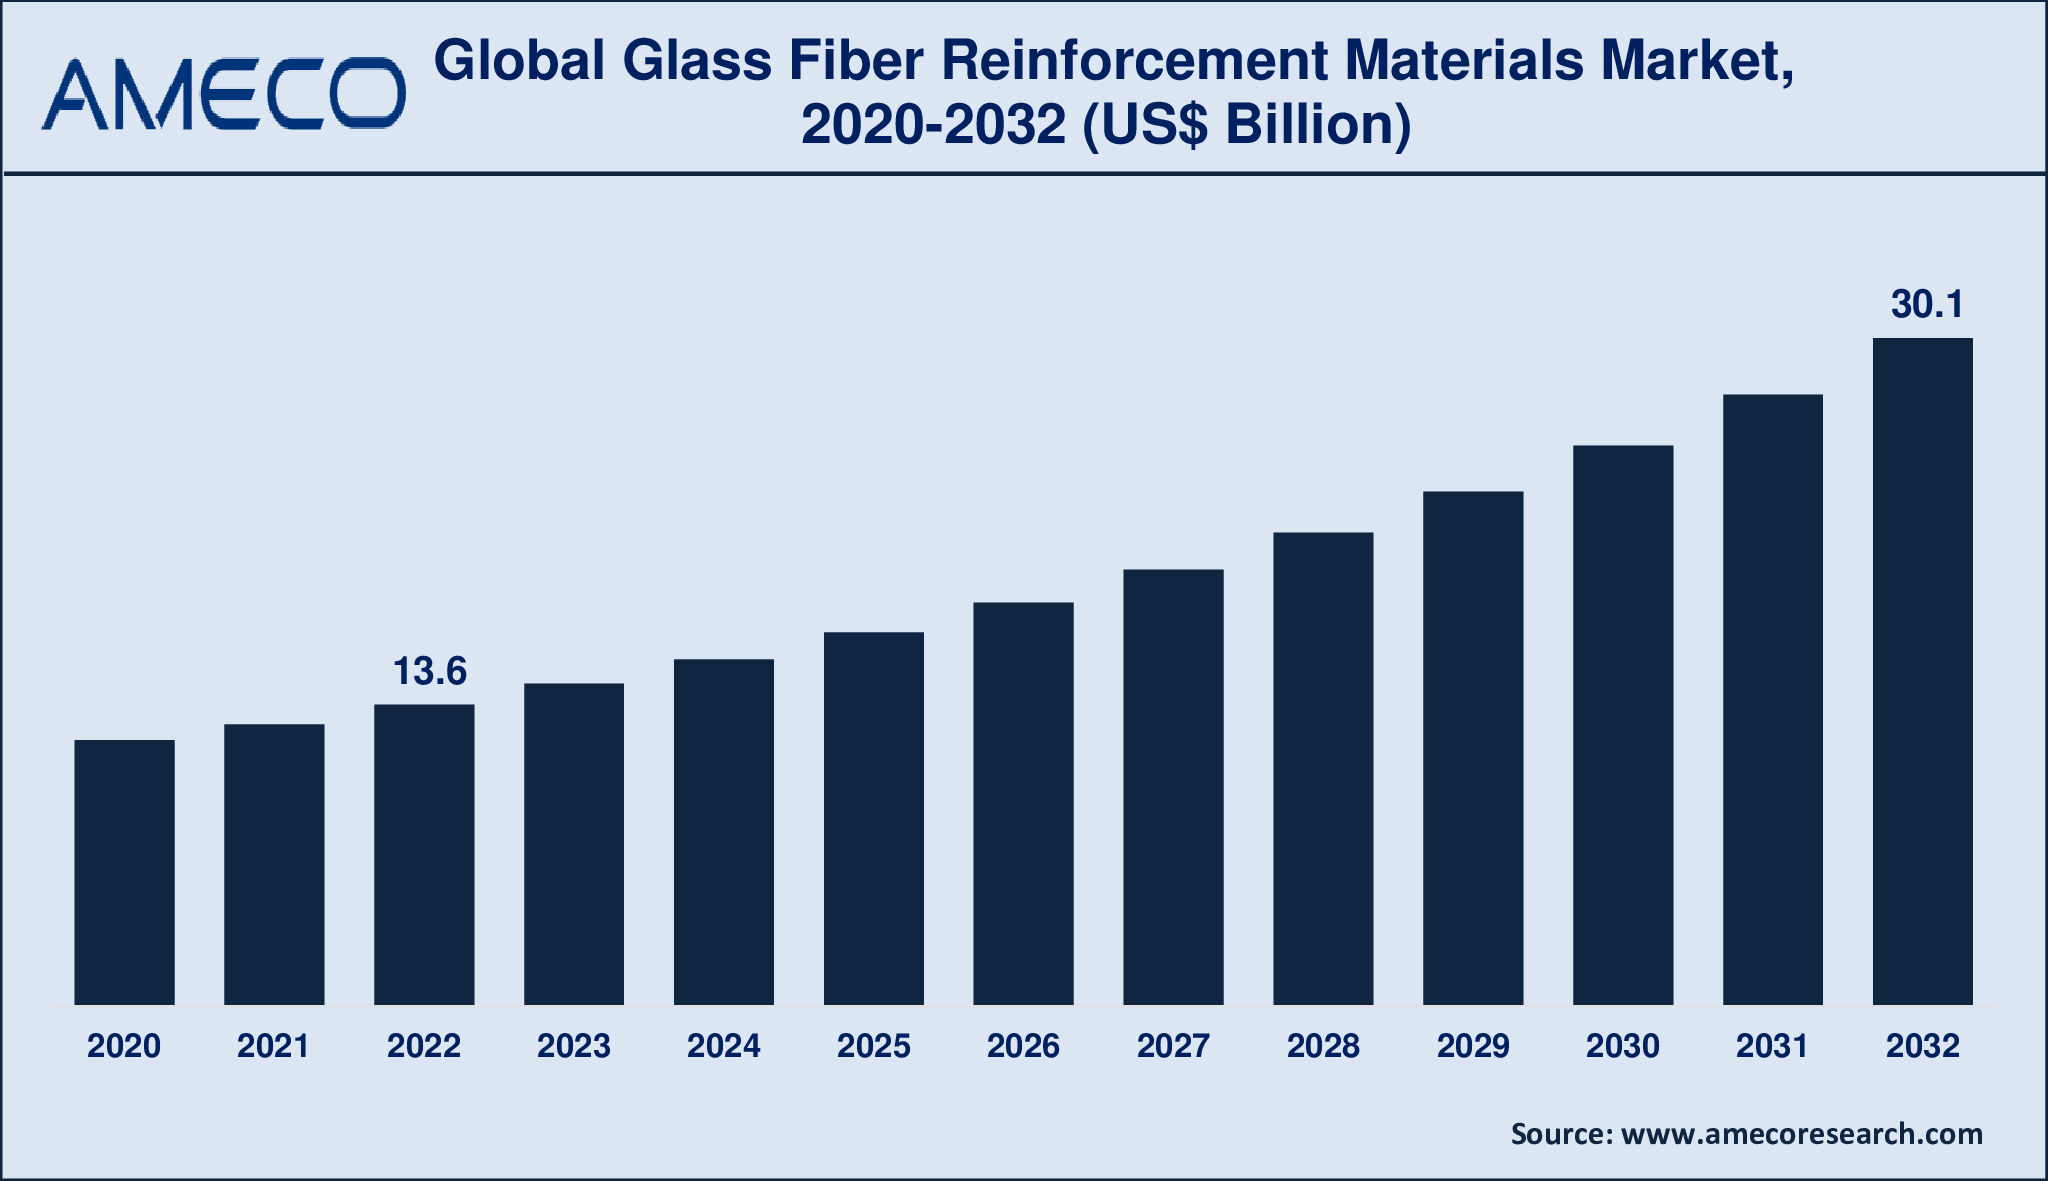 Glass Fiber Reinforcement Materials Market Dynamics